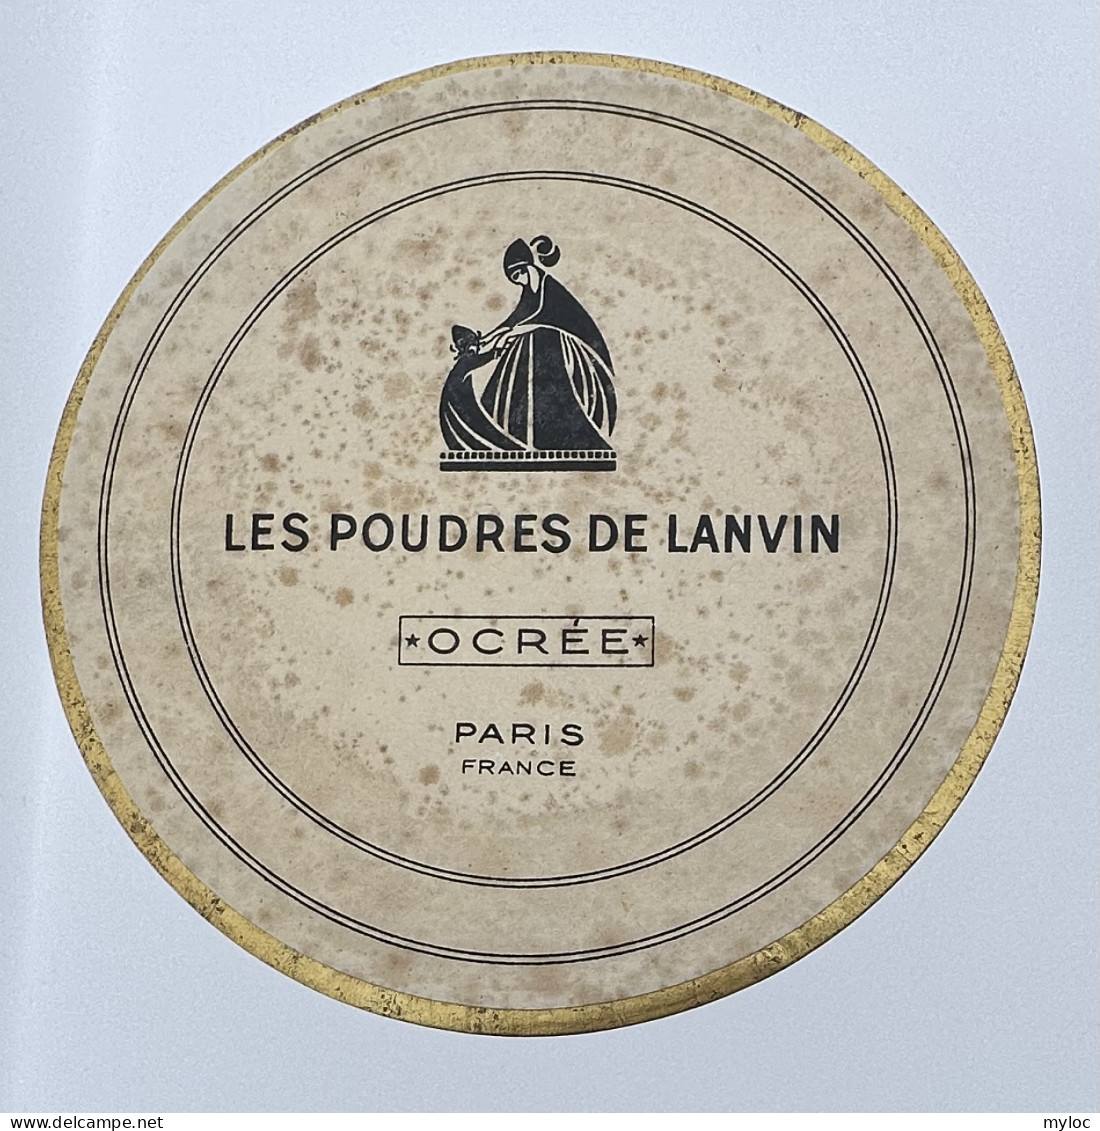 Ancien Poudrier LANVIN Et Sa Boite D'Origine. - Produits De Beauté